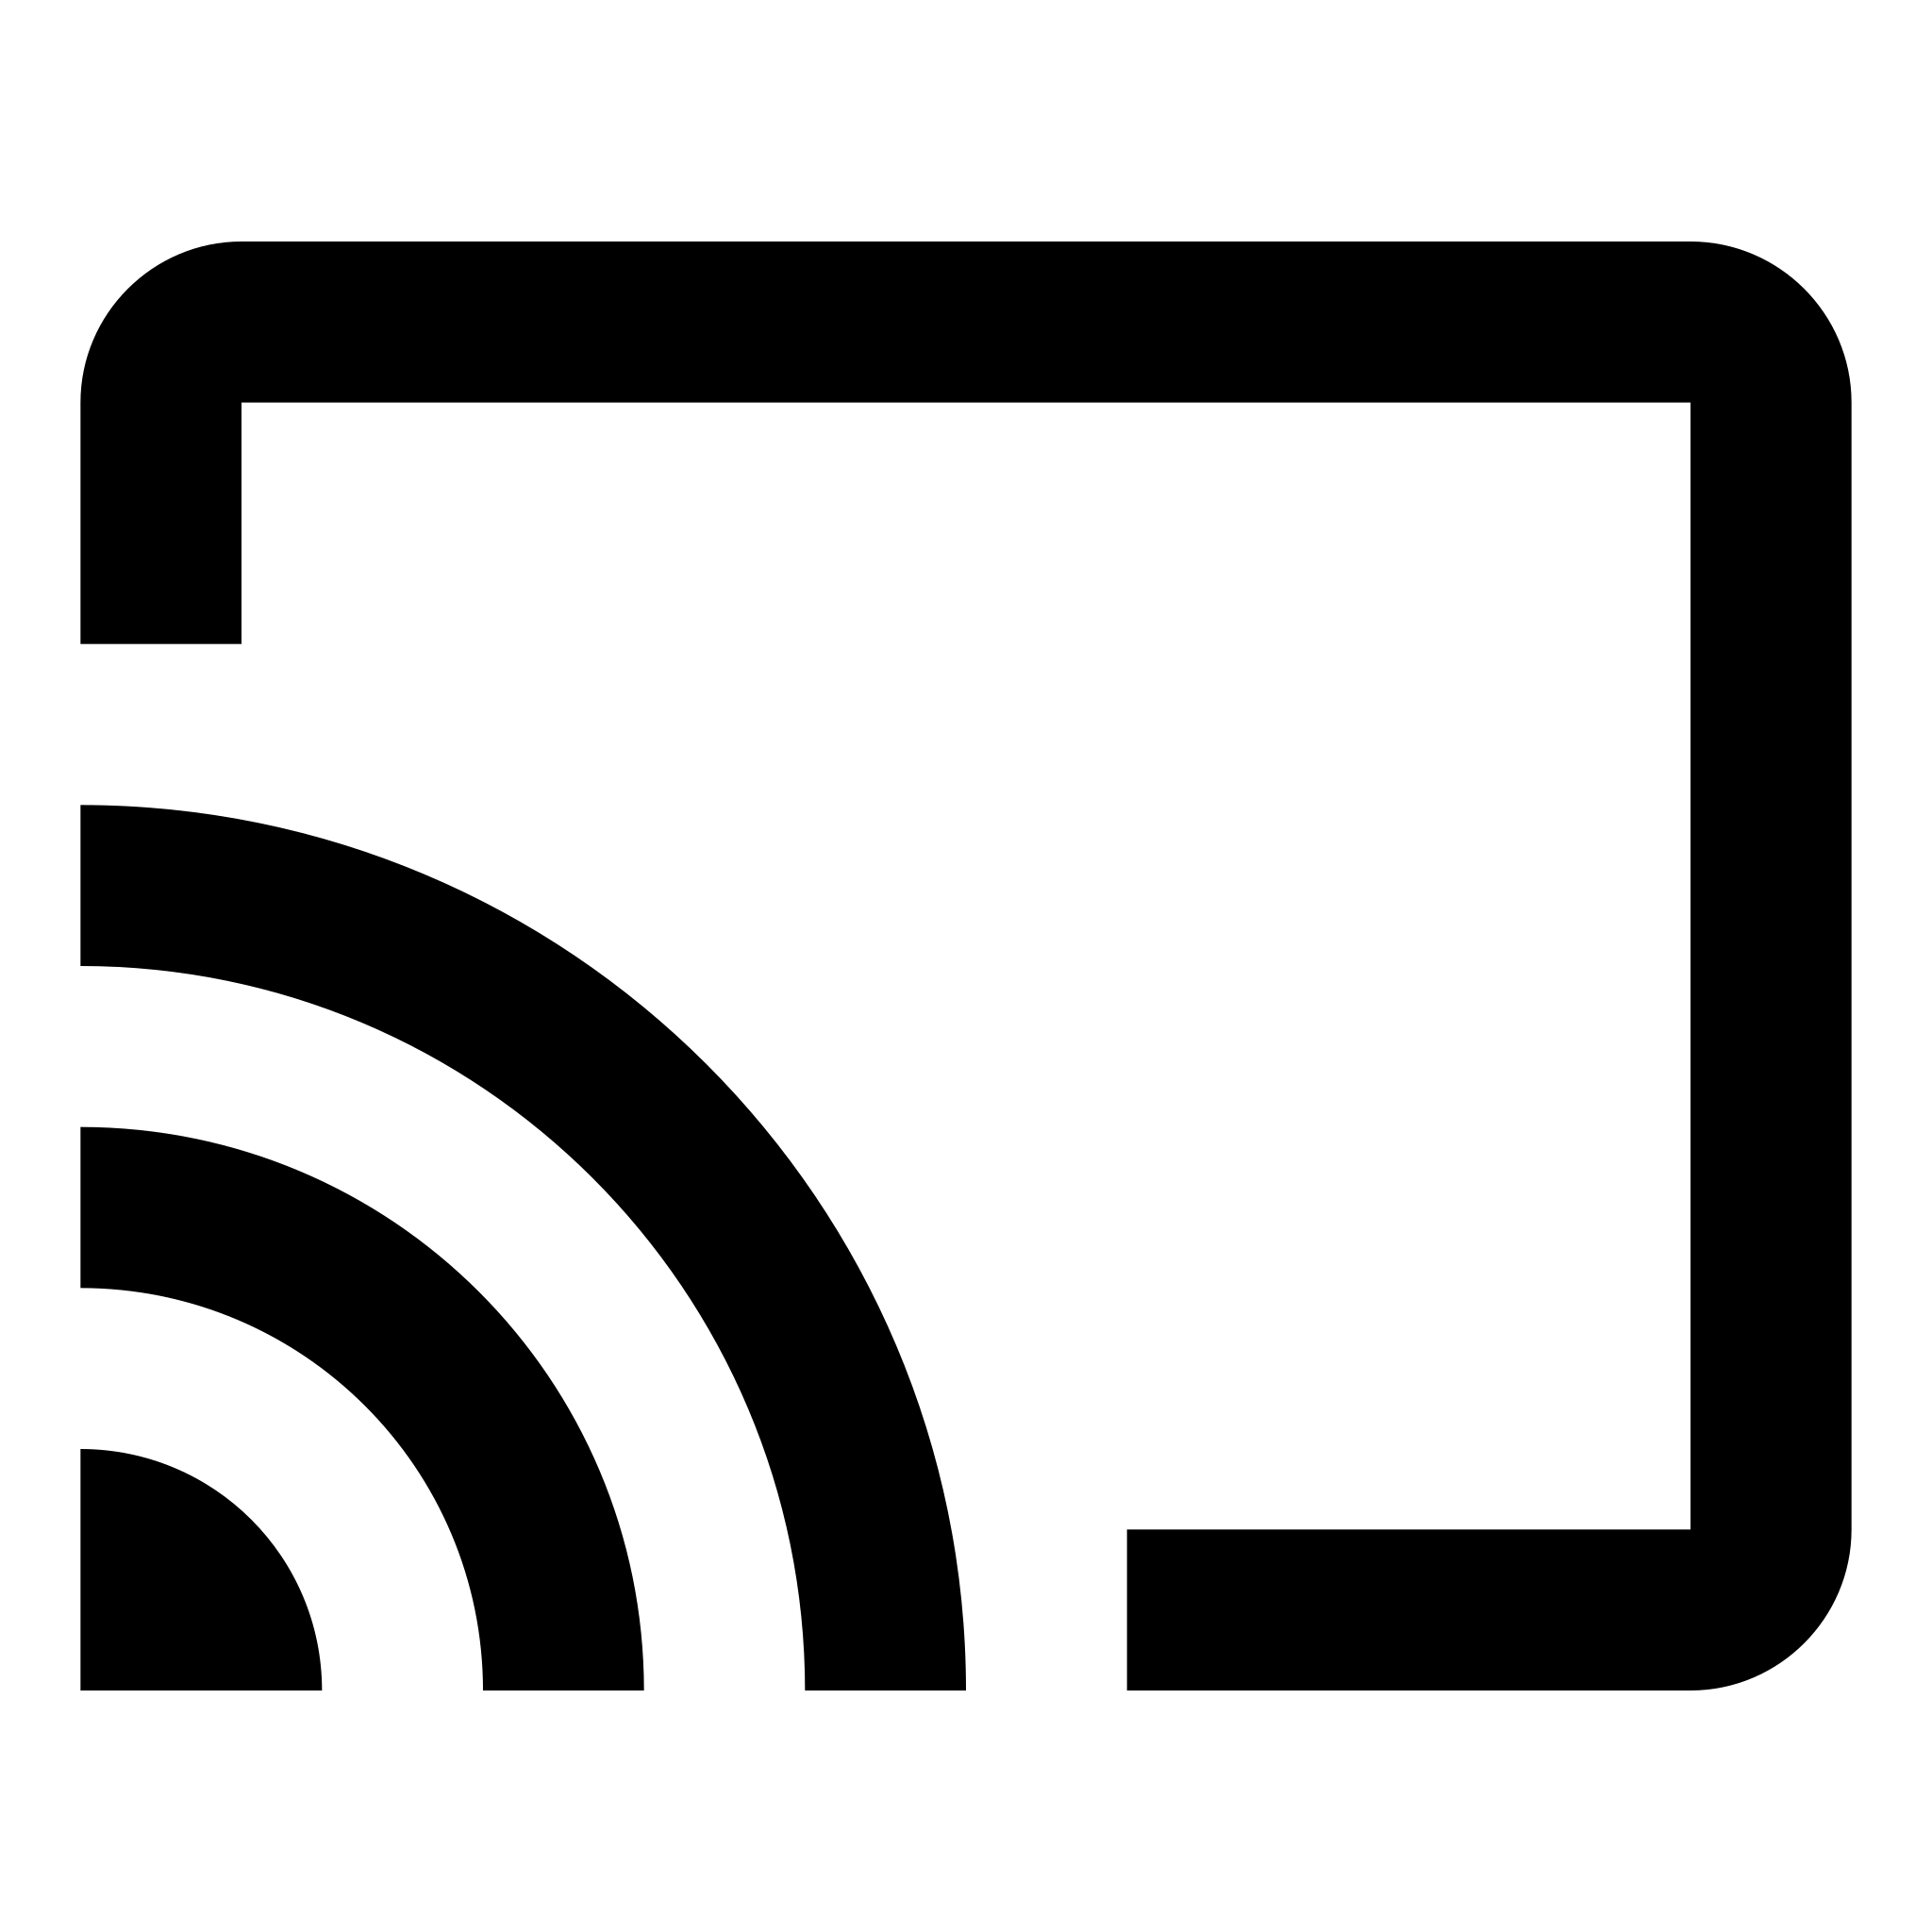 simbolo chromecast